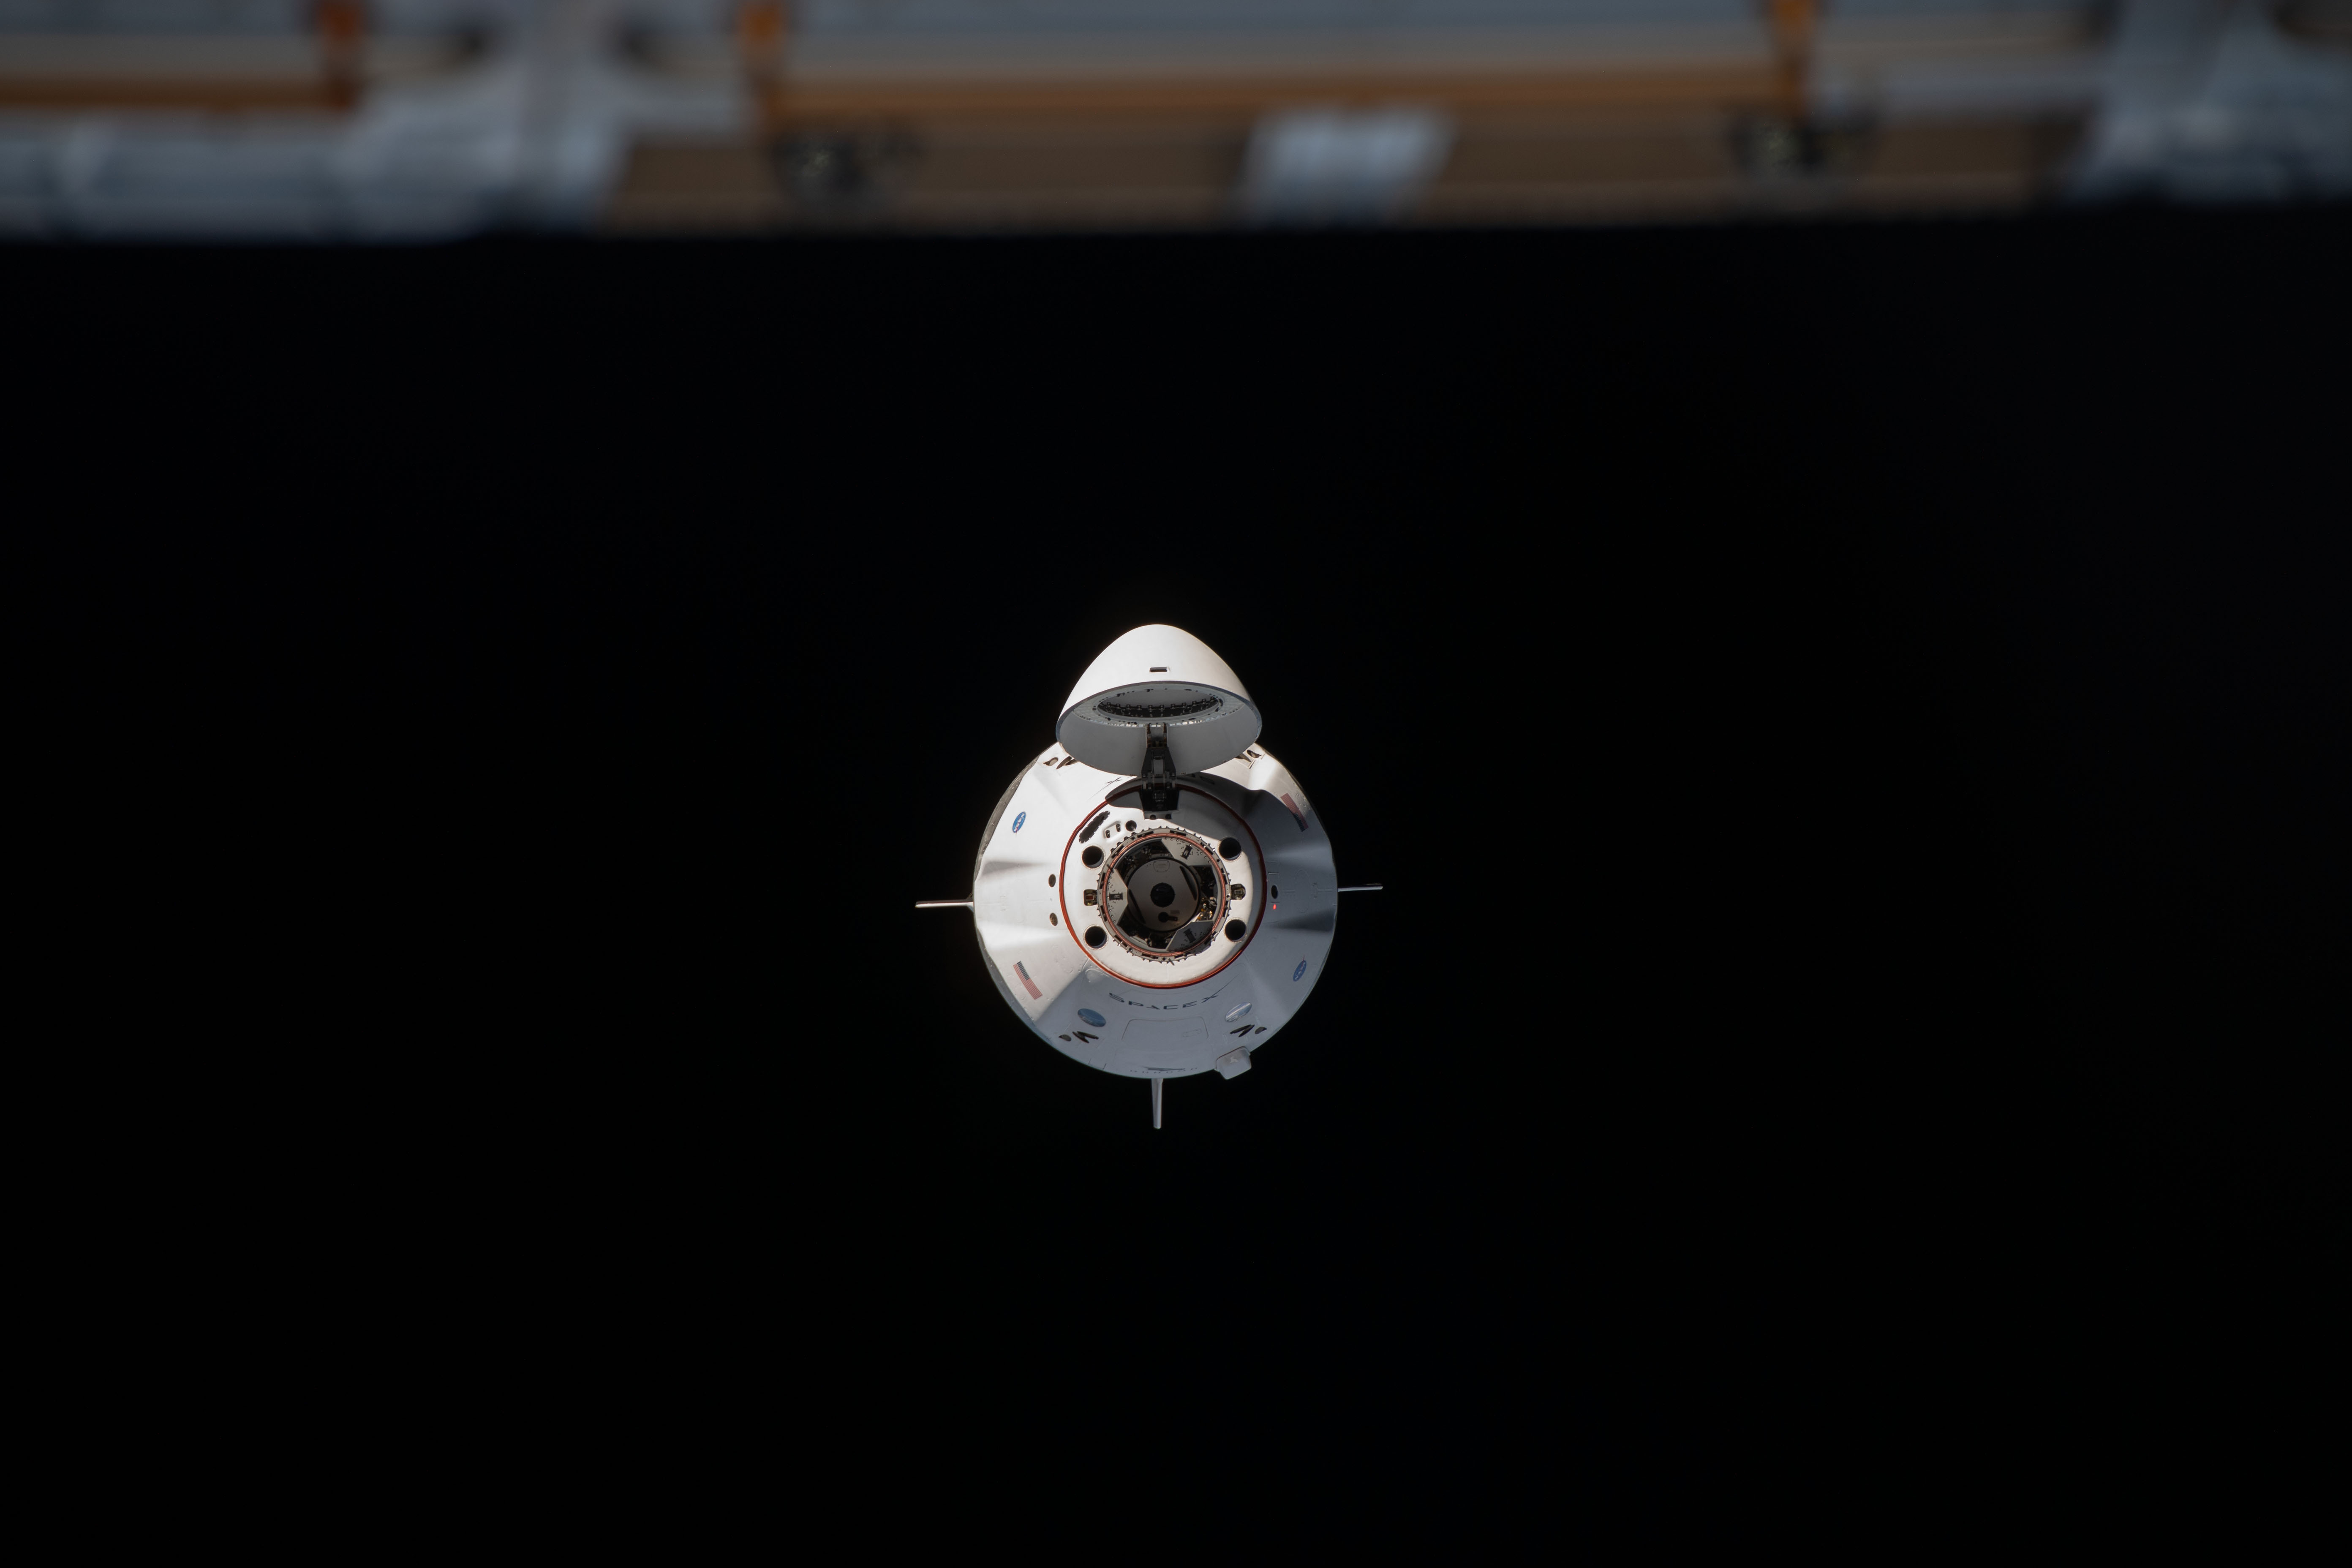 Załogowy Dragon 2 przed dokowaniem do ISS w ramach misji Crew-1 (Źródło: NASA Johnson)